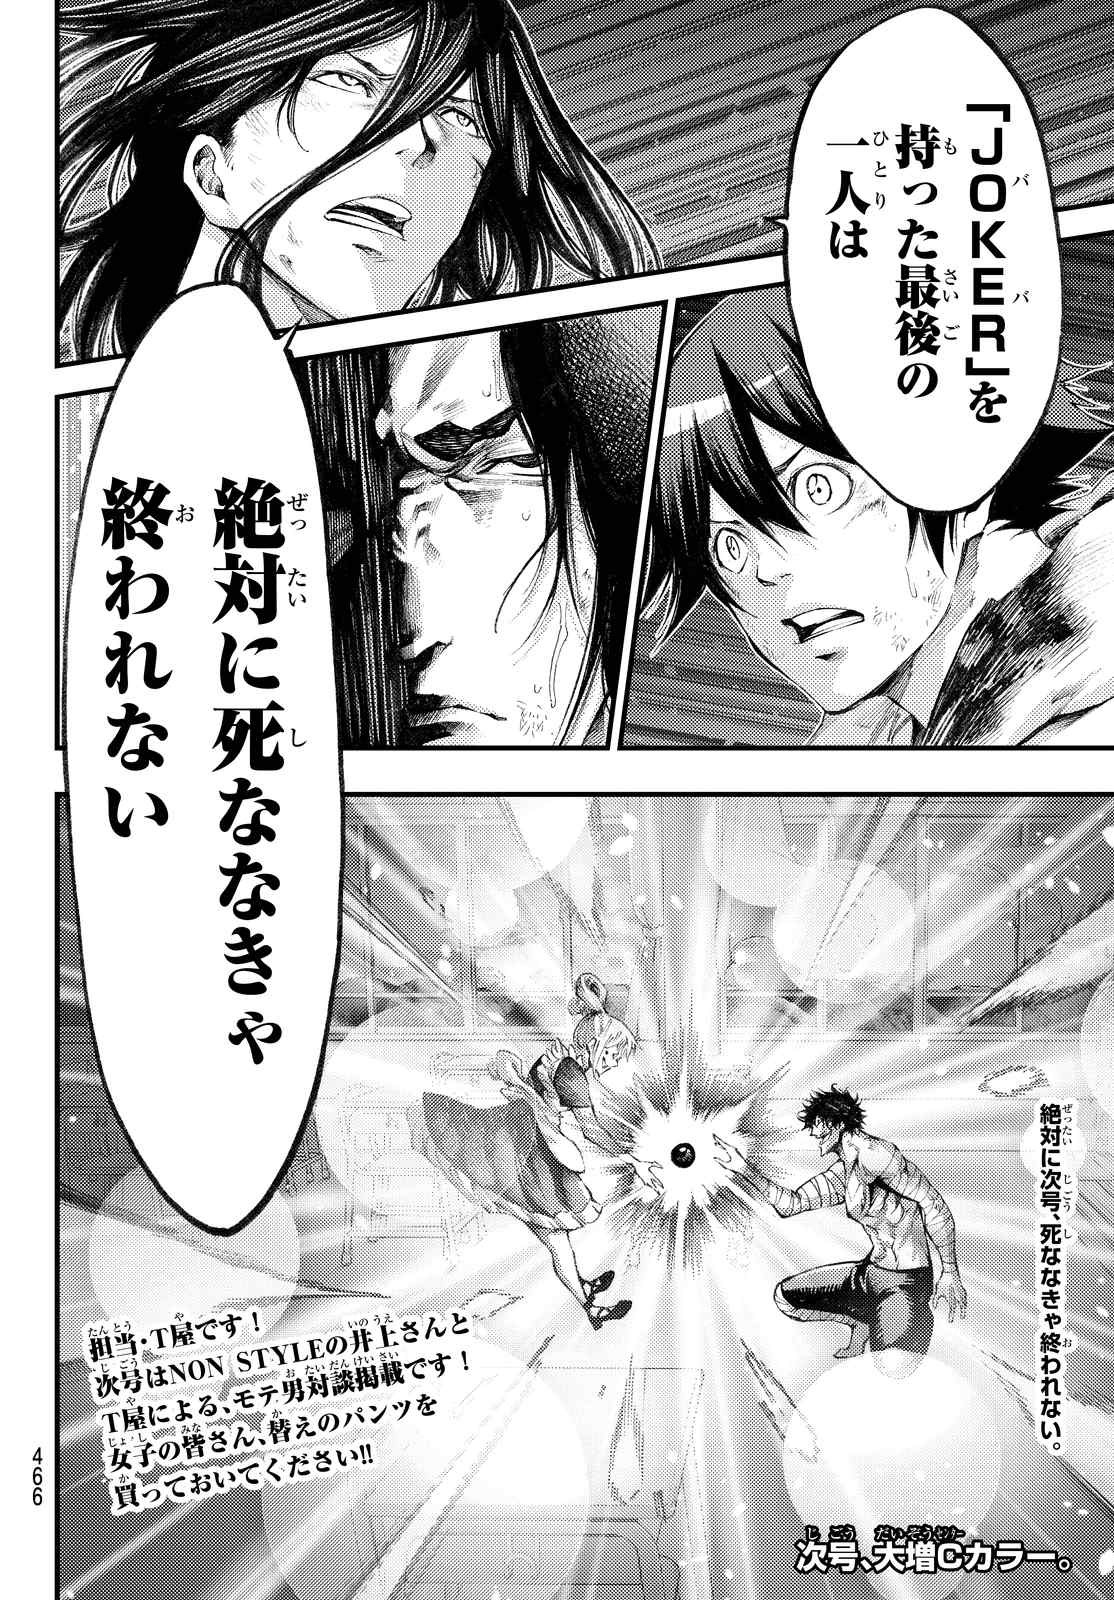 Kamisama no Ituori - Chapter 175 - Page 18